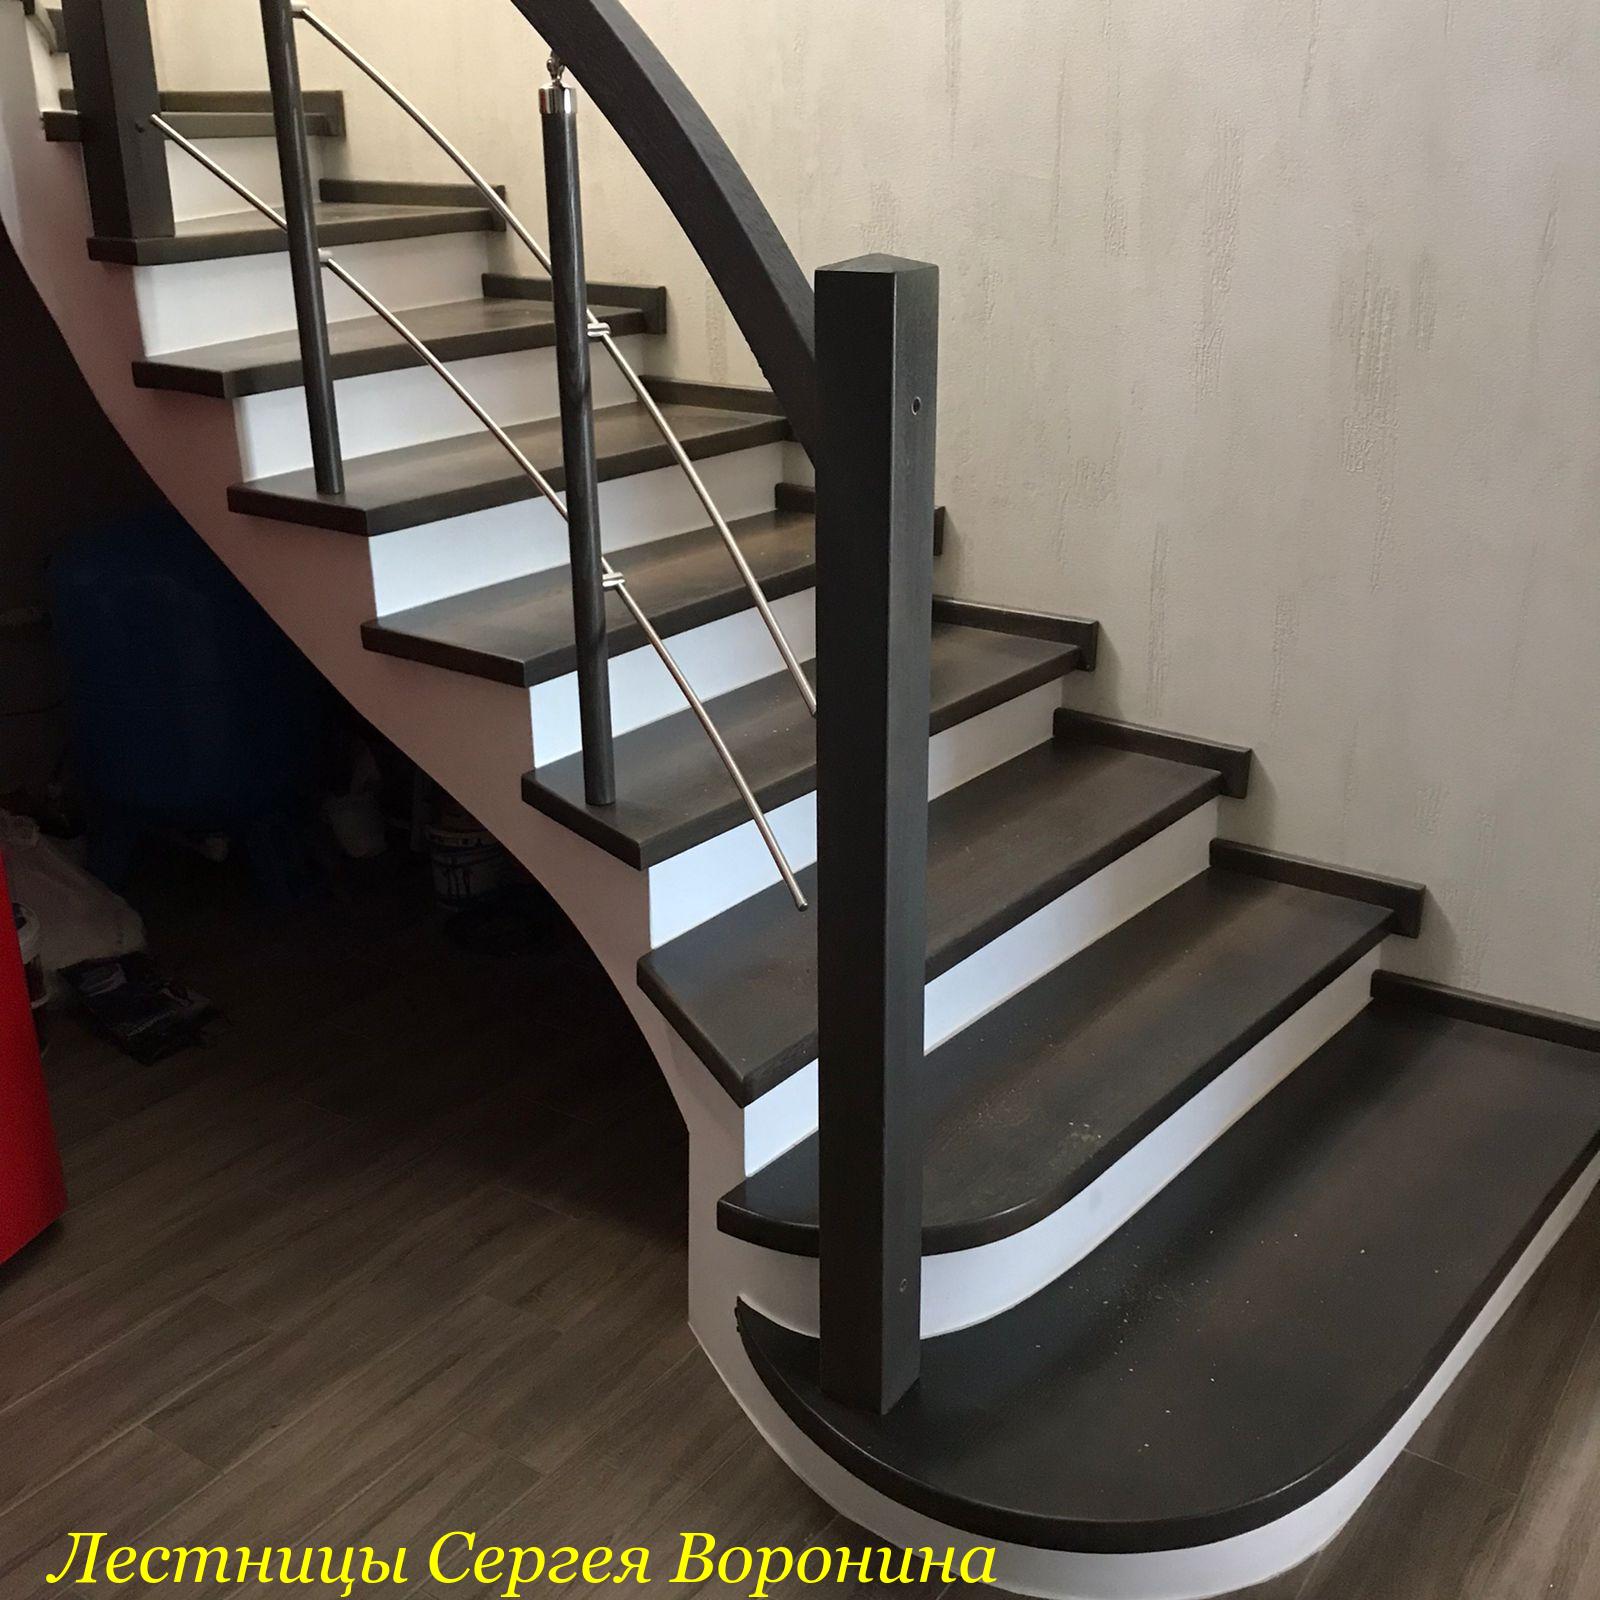 Межэтажные Лестницы Сергея Воронина, Воронеж - 